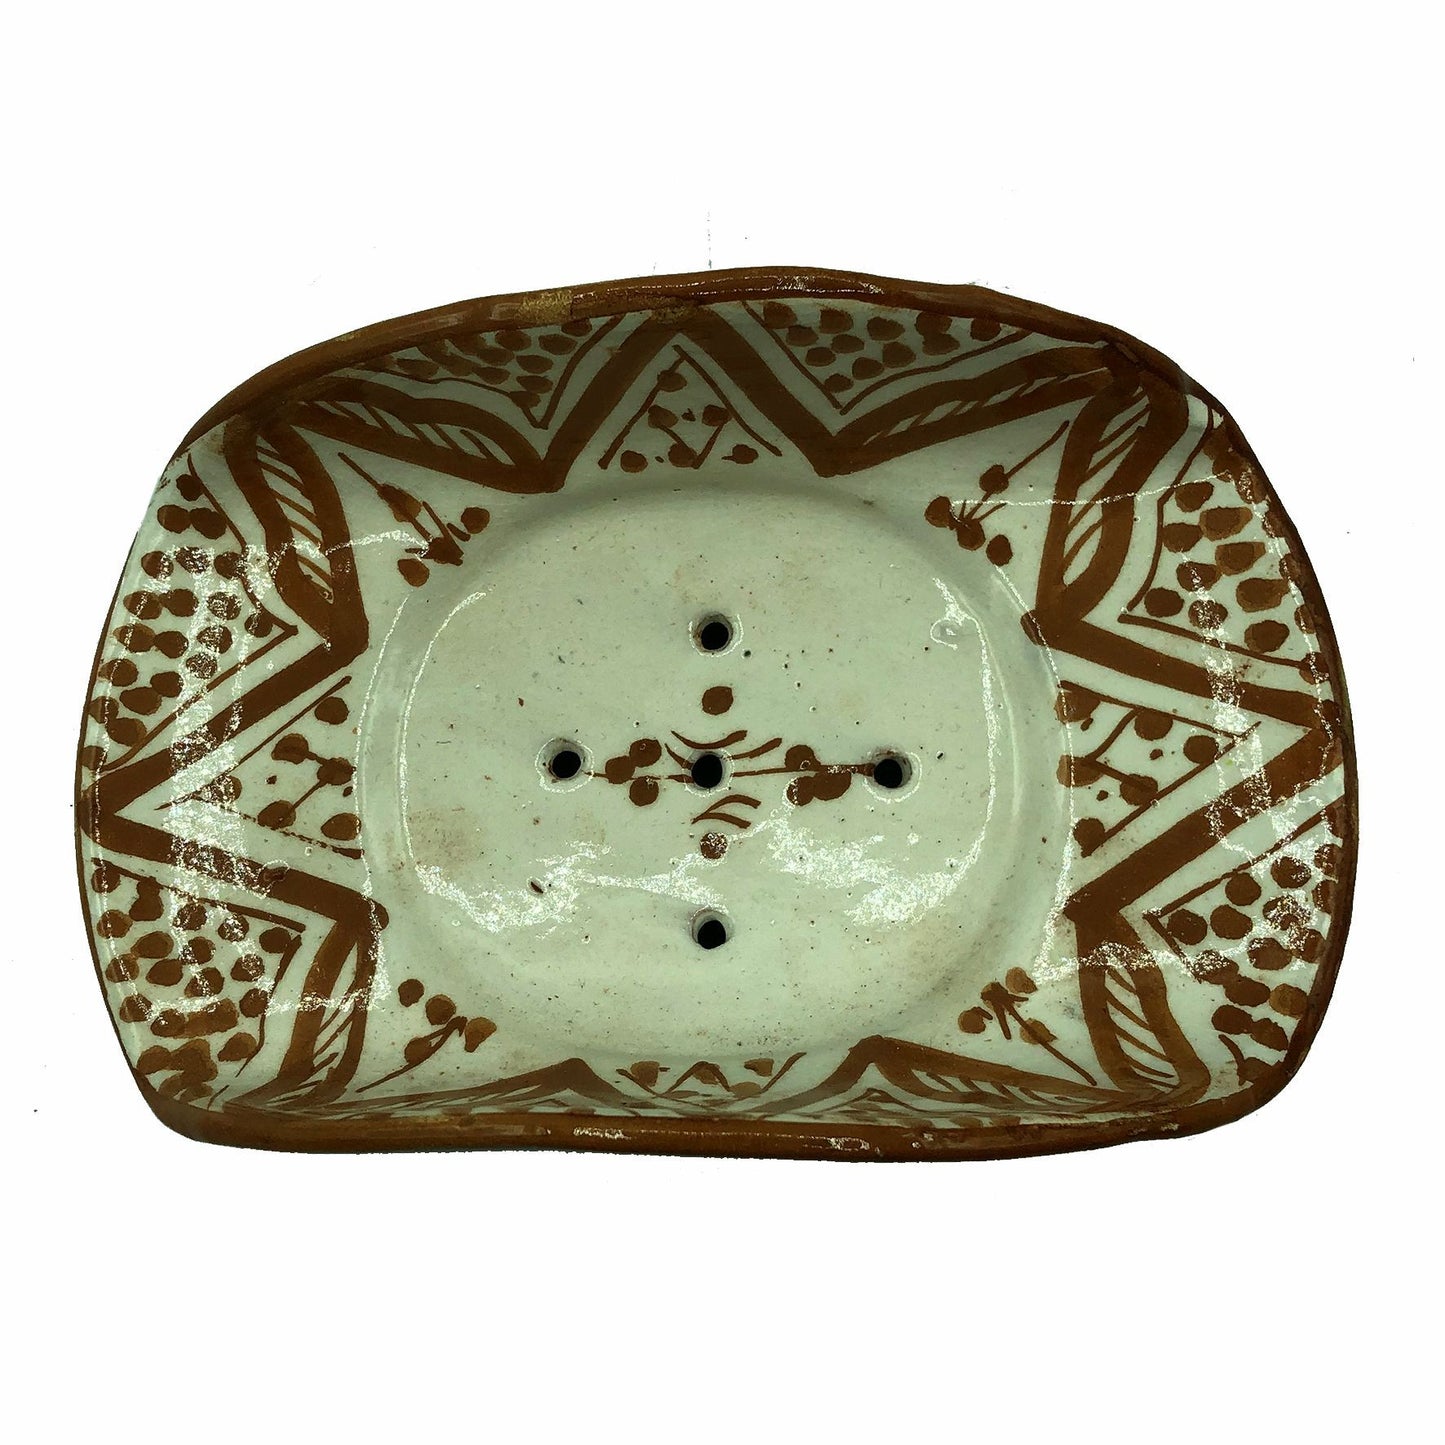 Arredamento Etnico Porta Sapone Ceramica Terre Cuite Artigiano Marocco 1904211007